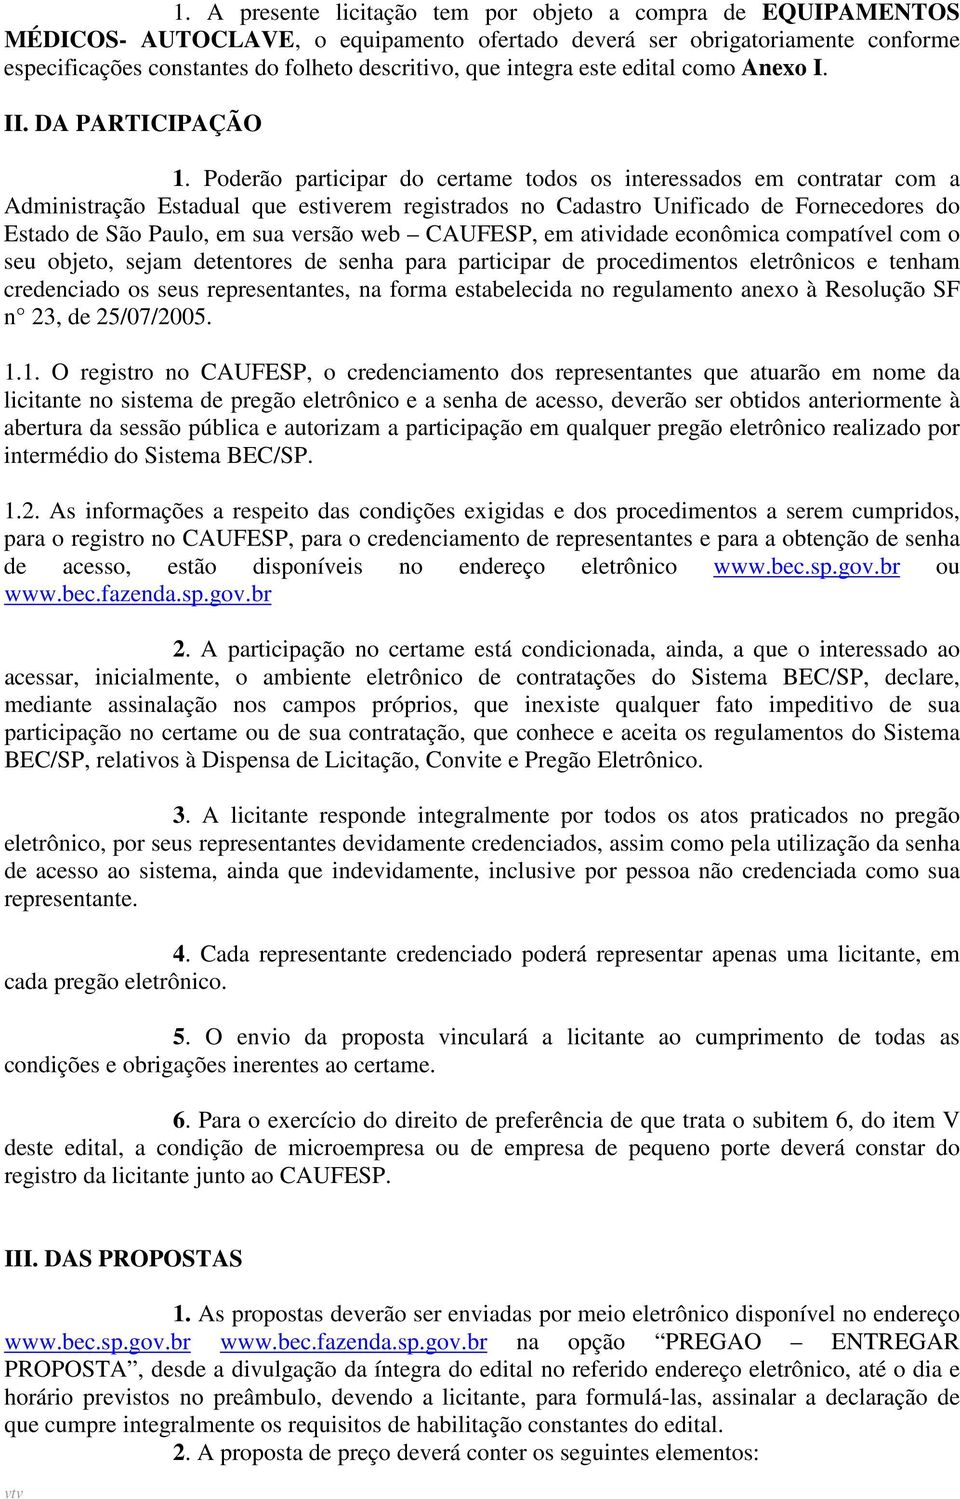 Poderão participar do certame todos os interessados em contratar com a Administração Estadual que estiverem registrados no Cadastro Unificado de Fornecedores do Estado de São Paulo, em sua versão web